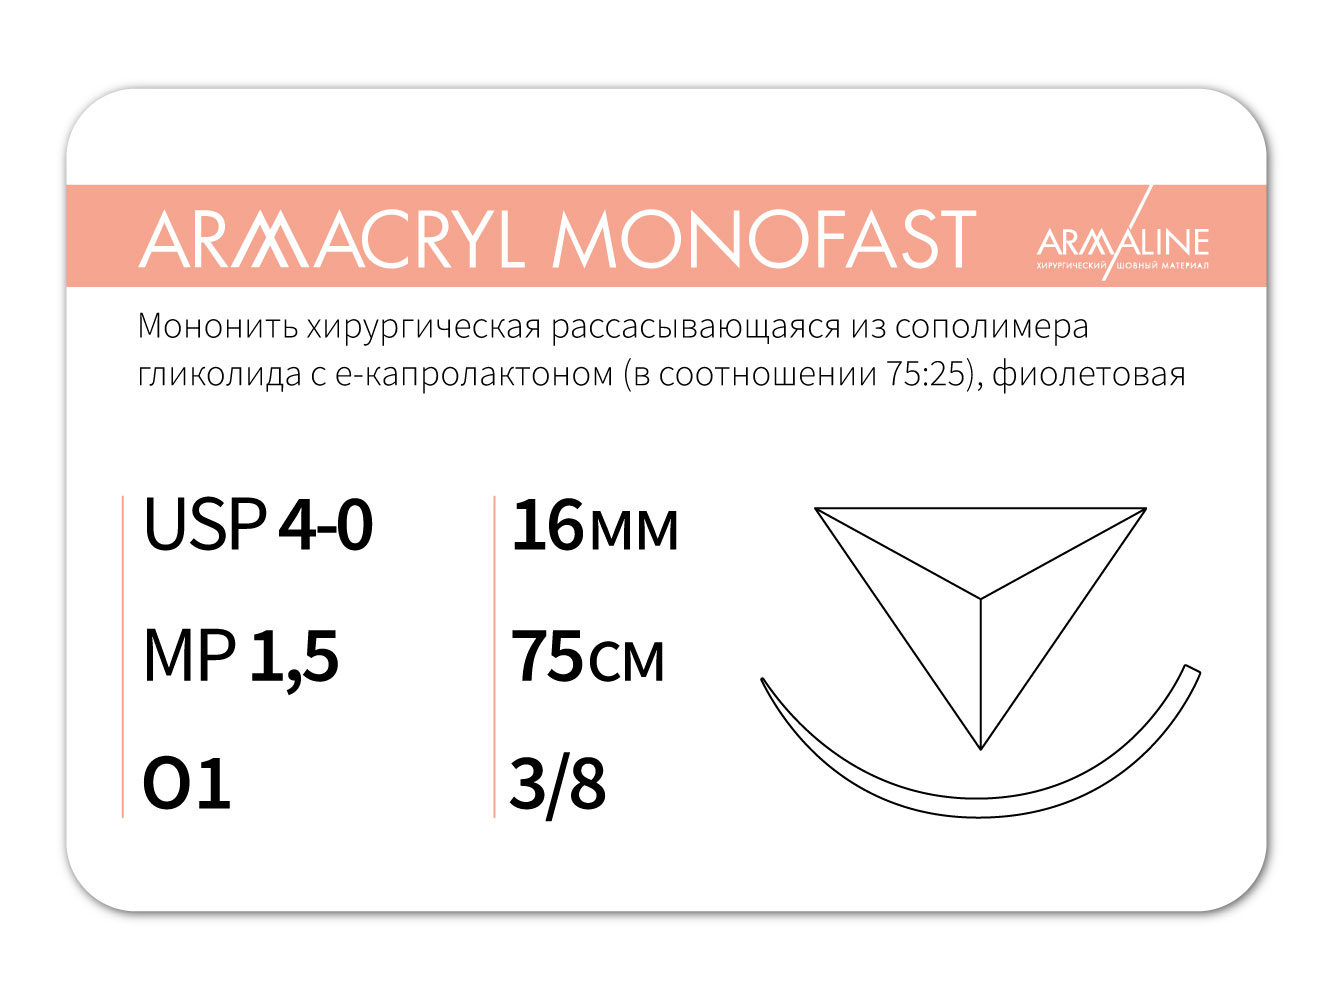 ARMACRYL MONOFAST/Армакрил монофаст (4-0) 75 см - материал хирургический шовный стерильный с атравматической обратно-режущей иглой